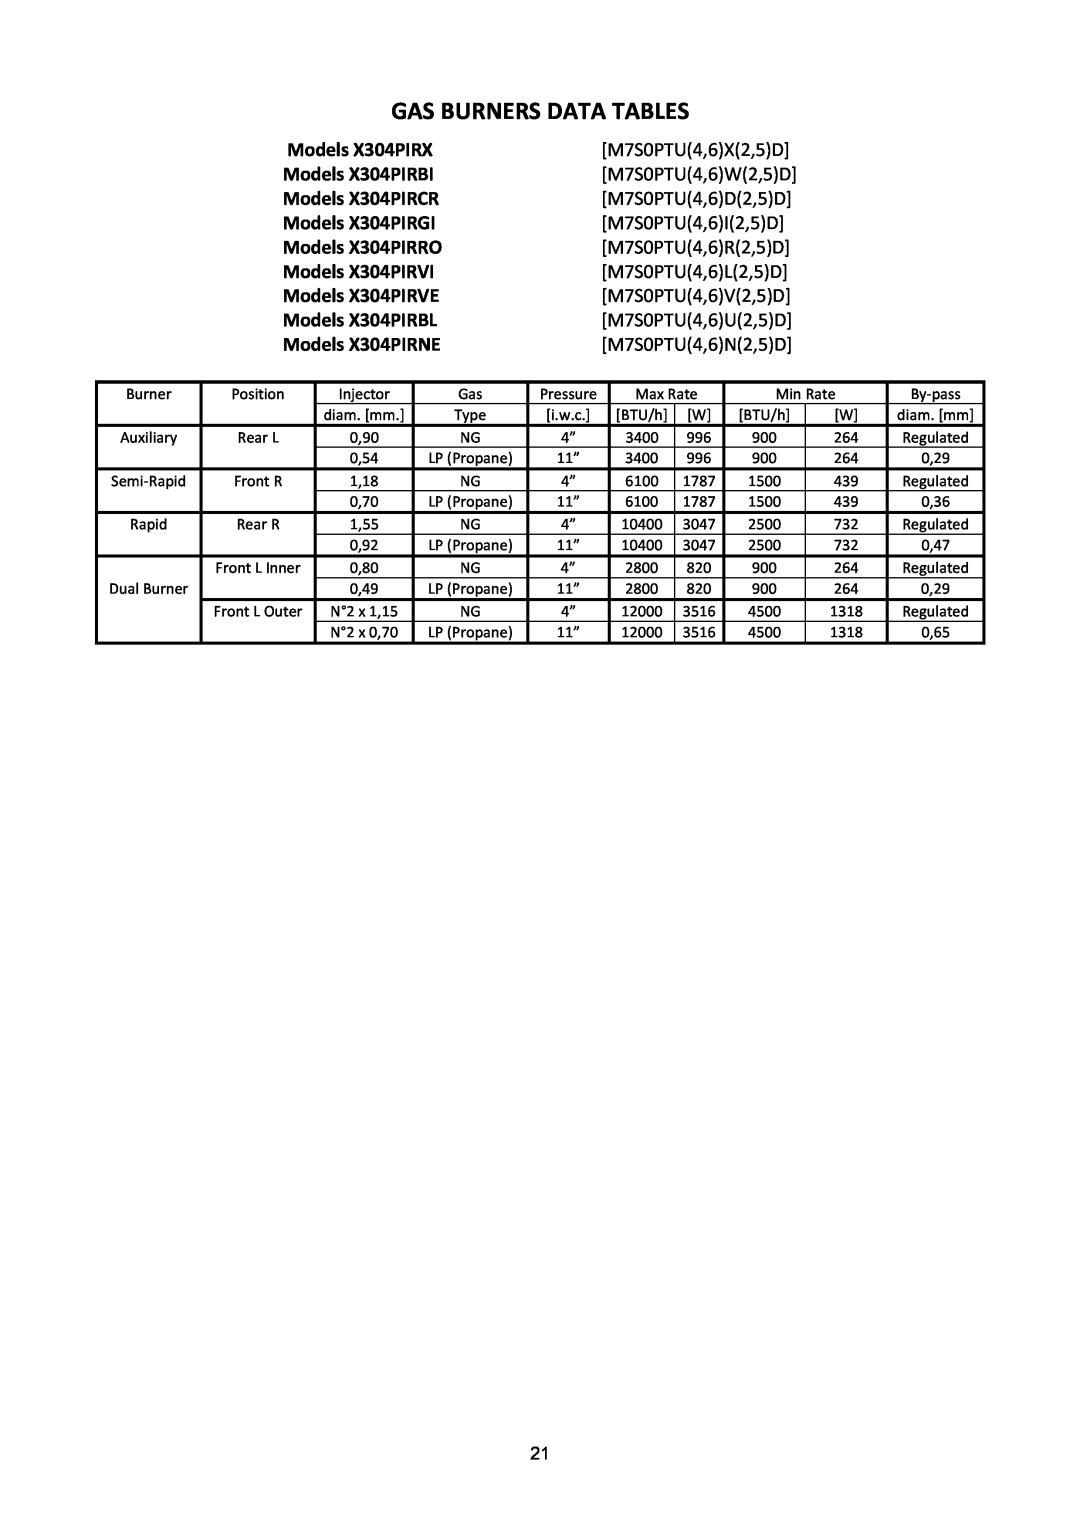 Bertazzoni X304PIRGI Gas Burners Data Tables, Models X304PIRX, Models X304PIRBI, Models X304PIRCR, Models X304PIRRO 